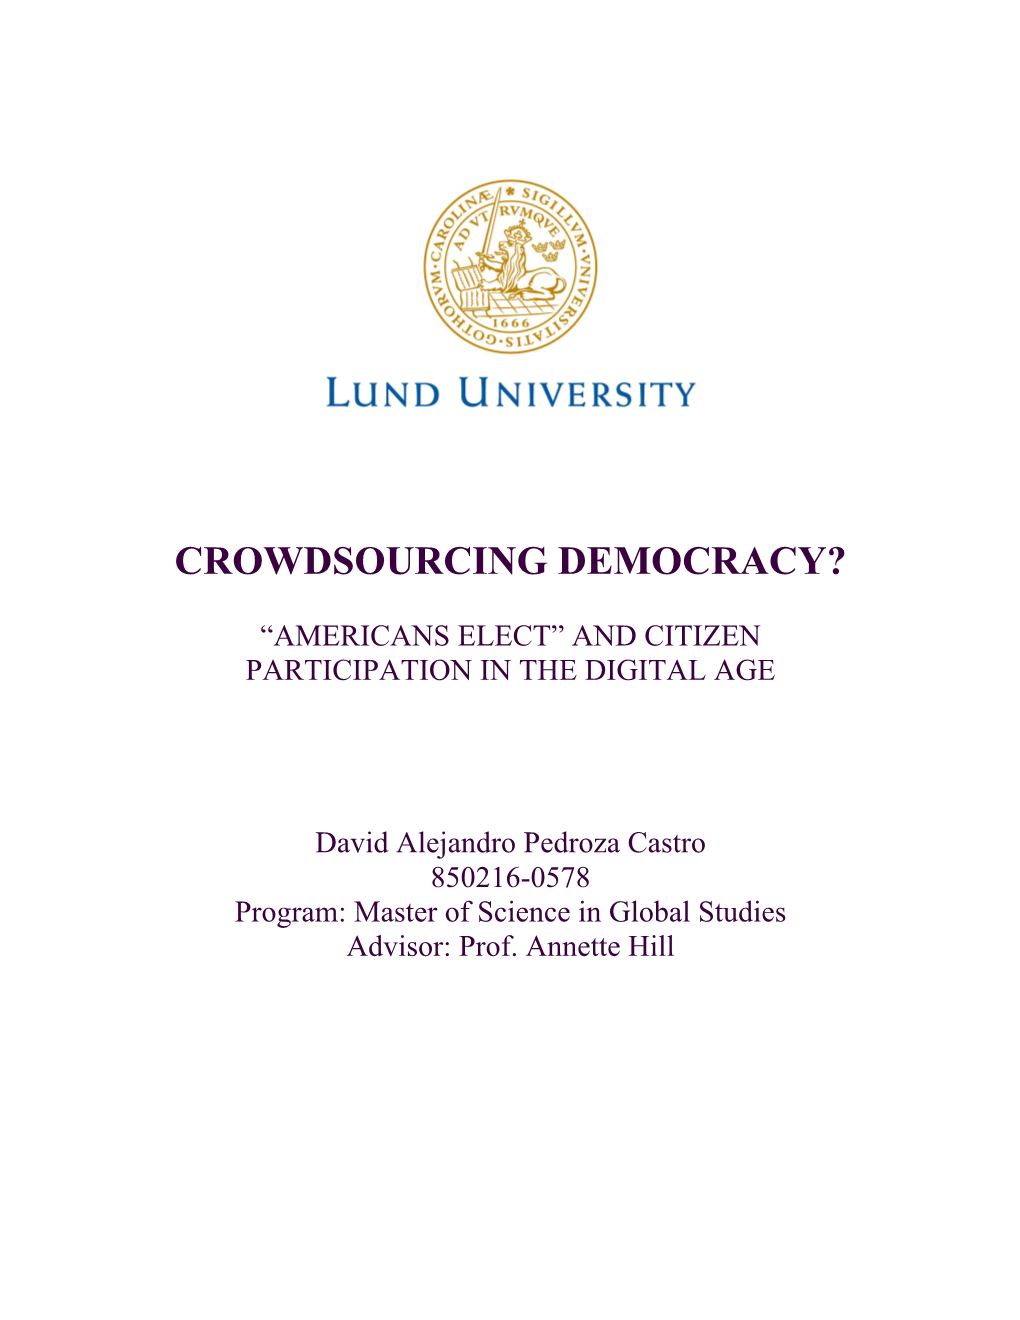 Crowdsourcing Democracy?